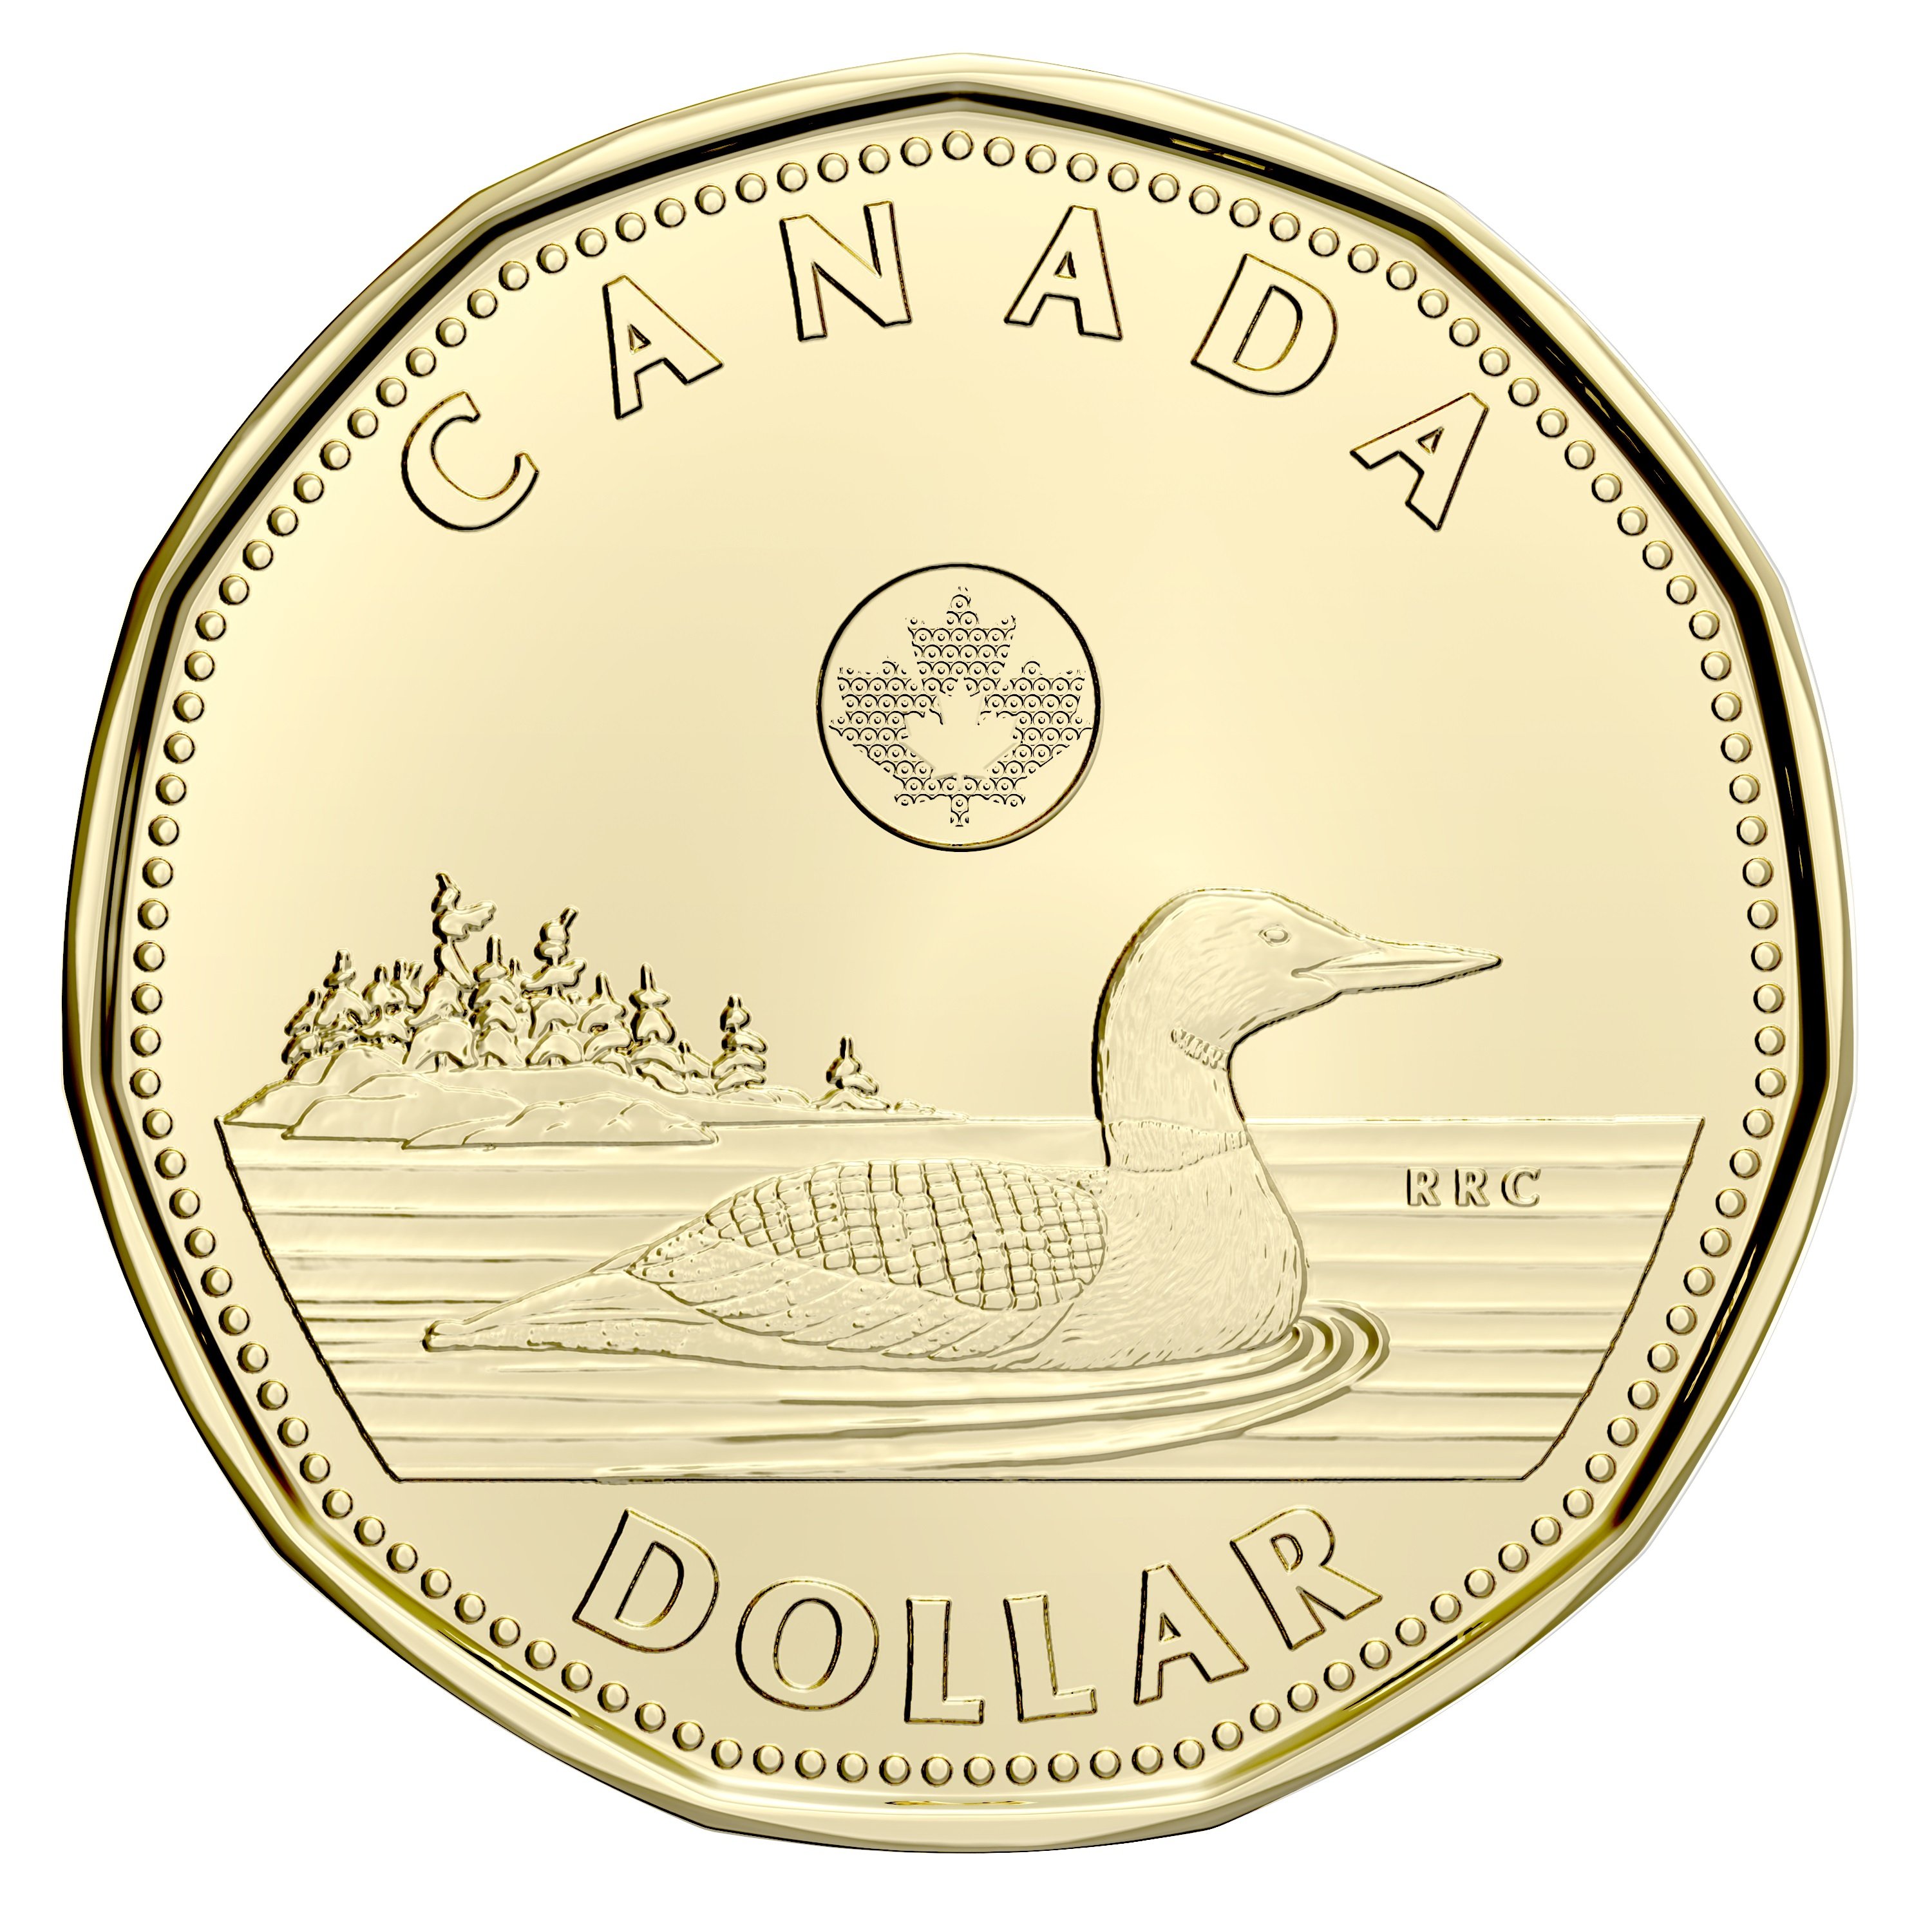 1-DOLLAR - 2022 CLASSIC 1-DOLLAR - BRILLIANT UNCIRCULATED (BU) - 2022  CANADIAN COINS